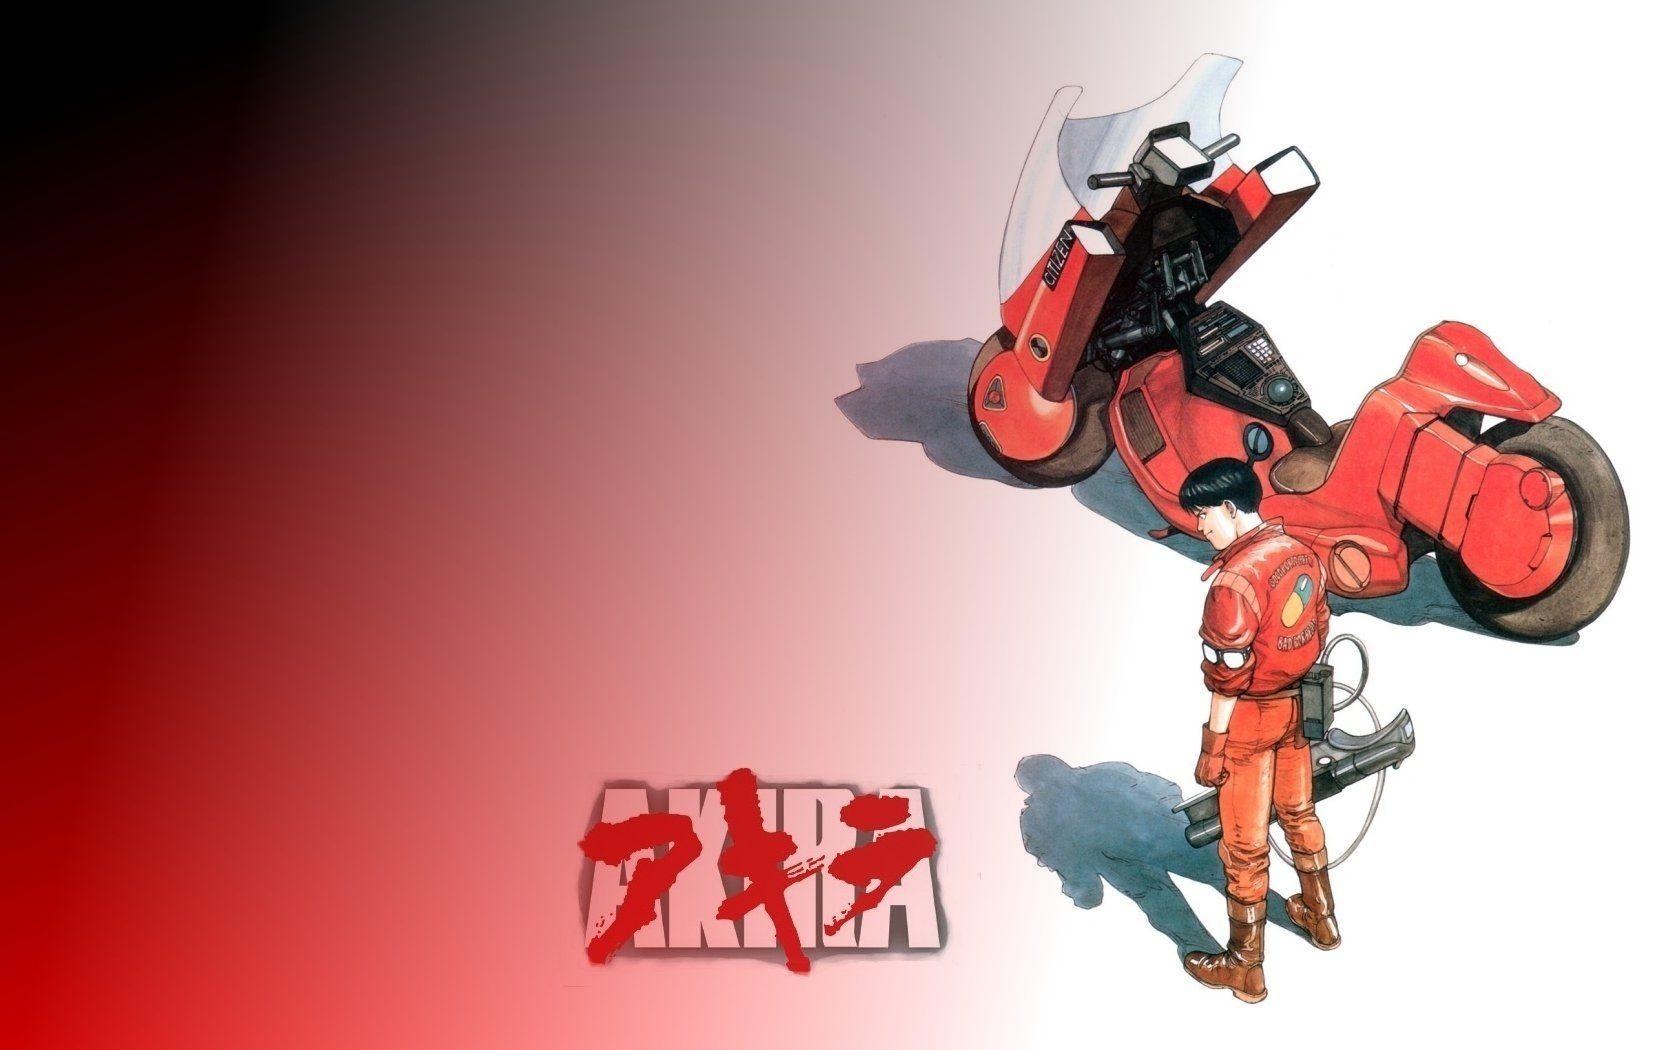 Akira HD Wallpaper and Background Image